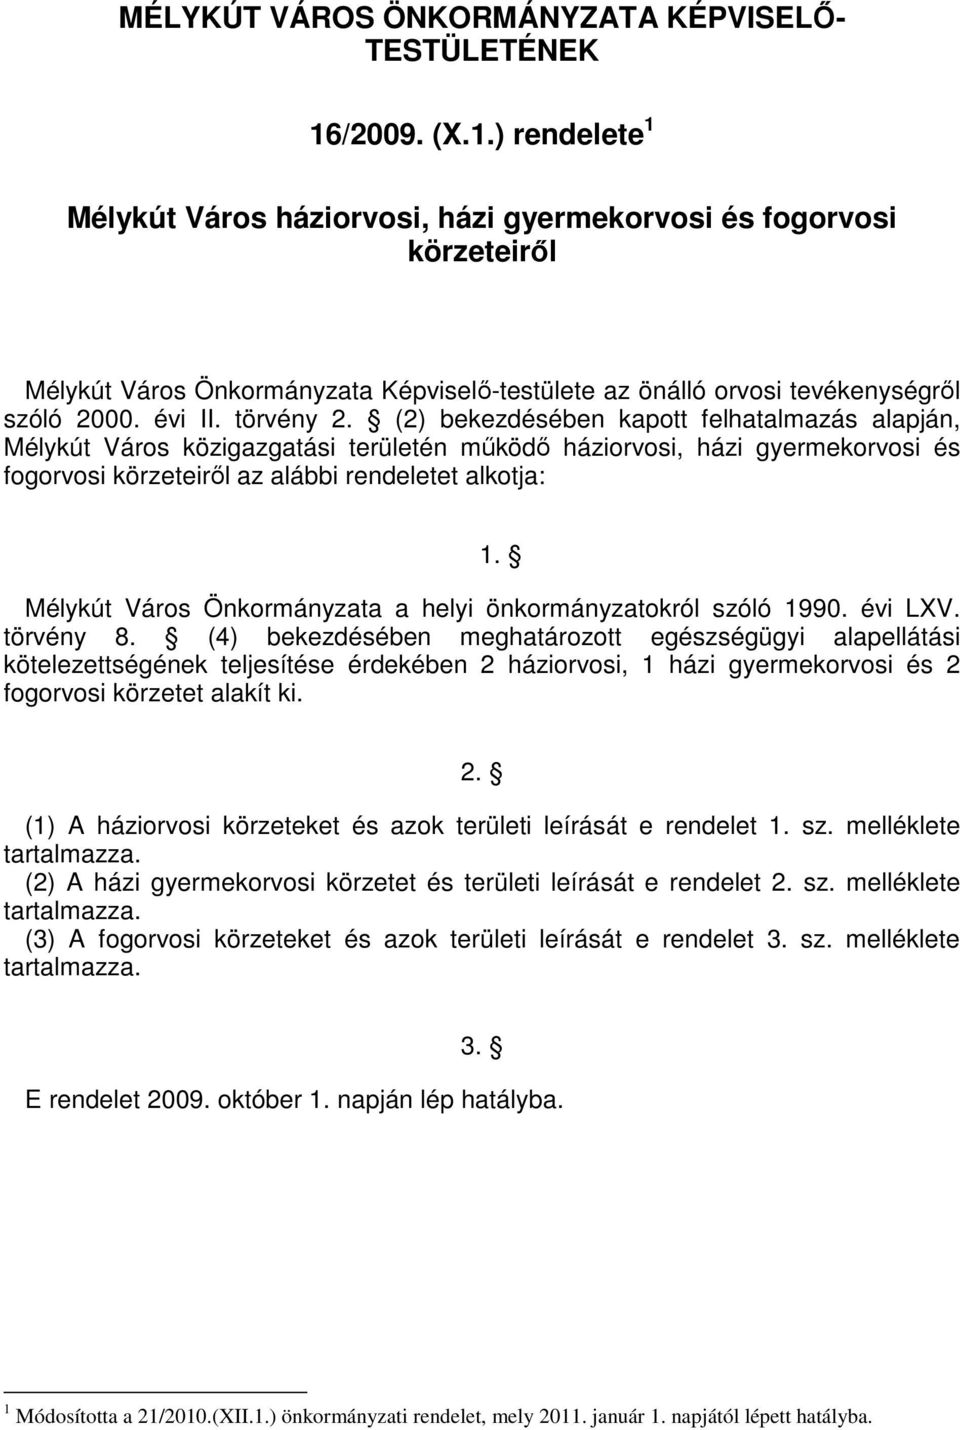 törvény 2. (2) bekezdésében kapott felhatalmazás alapján, Mélykút Város közigazgatási területén mőködı háziorvosi, házi gyermekorvosi és fogorvosi körzeteirıl az alábbi rendeletet alkotja: 1.